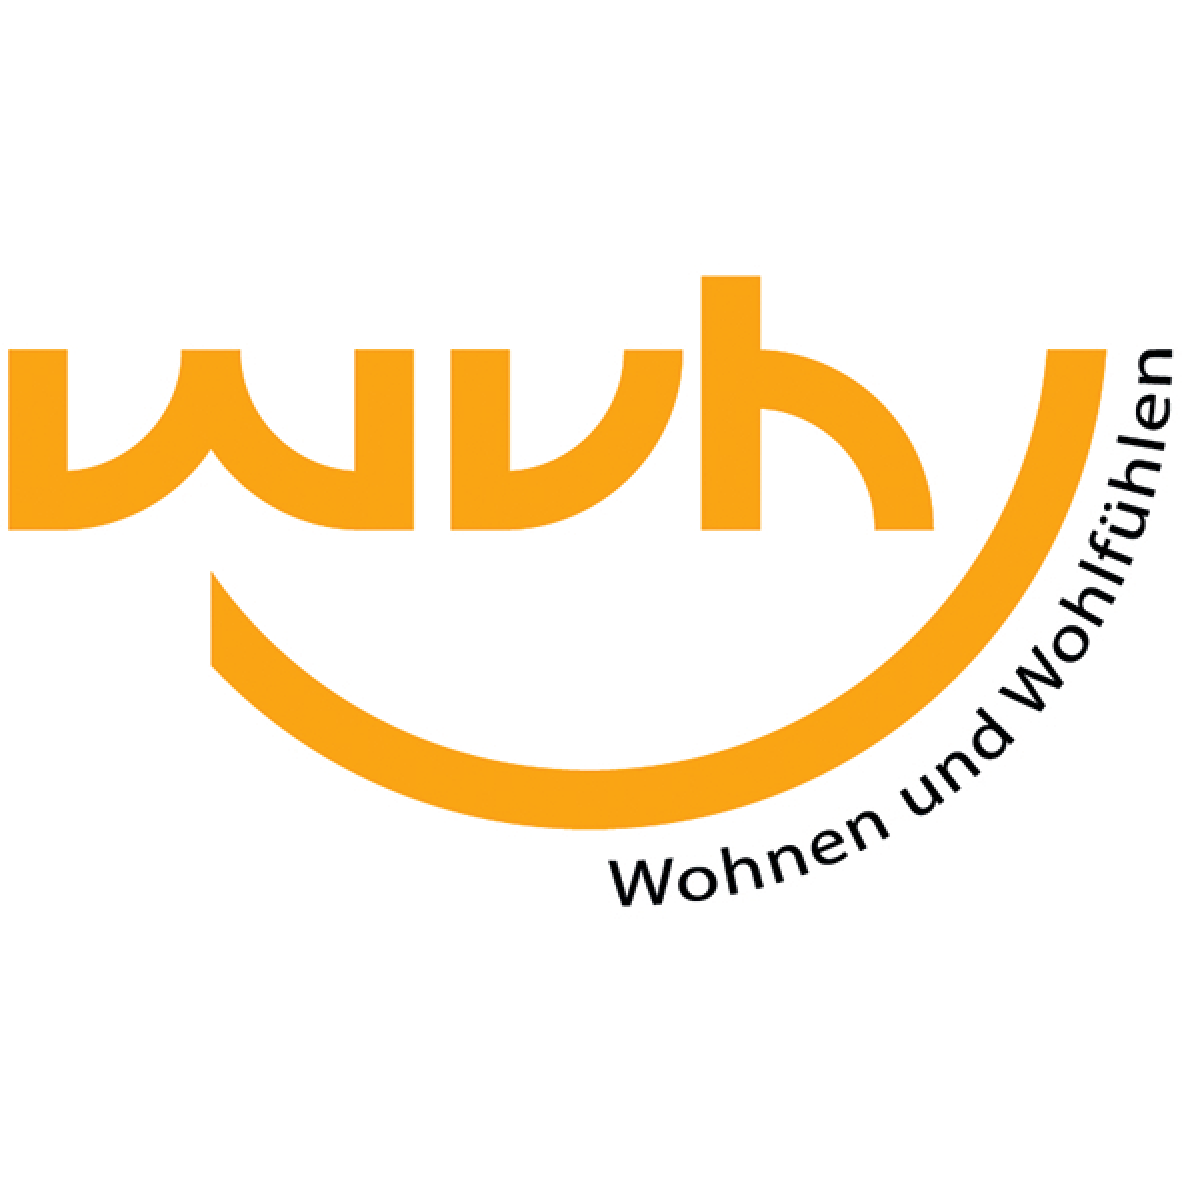 Heidenauer Privatisierungs- und Bauträger GmbH in Heidenau in Sachsen - Logo